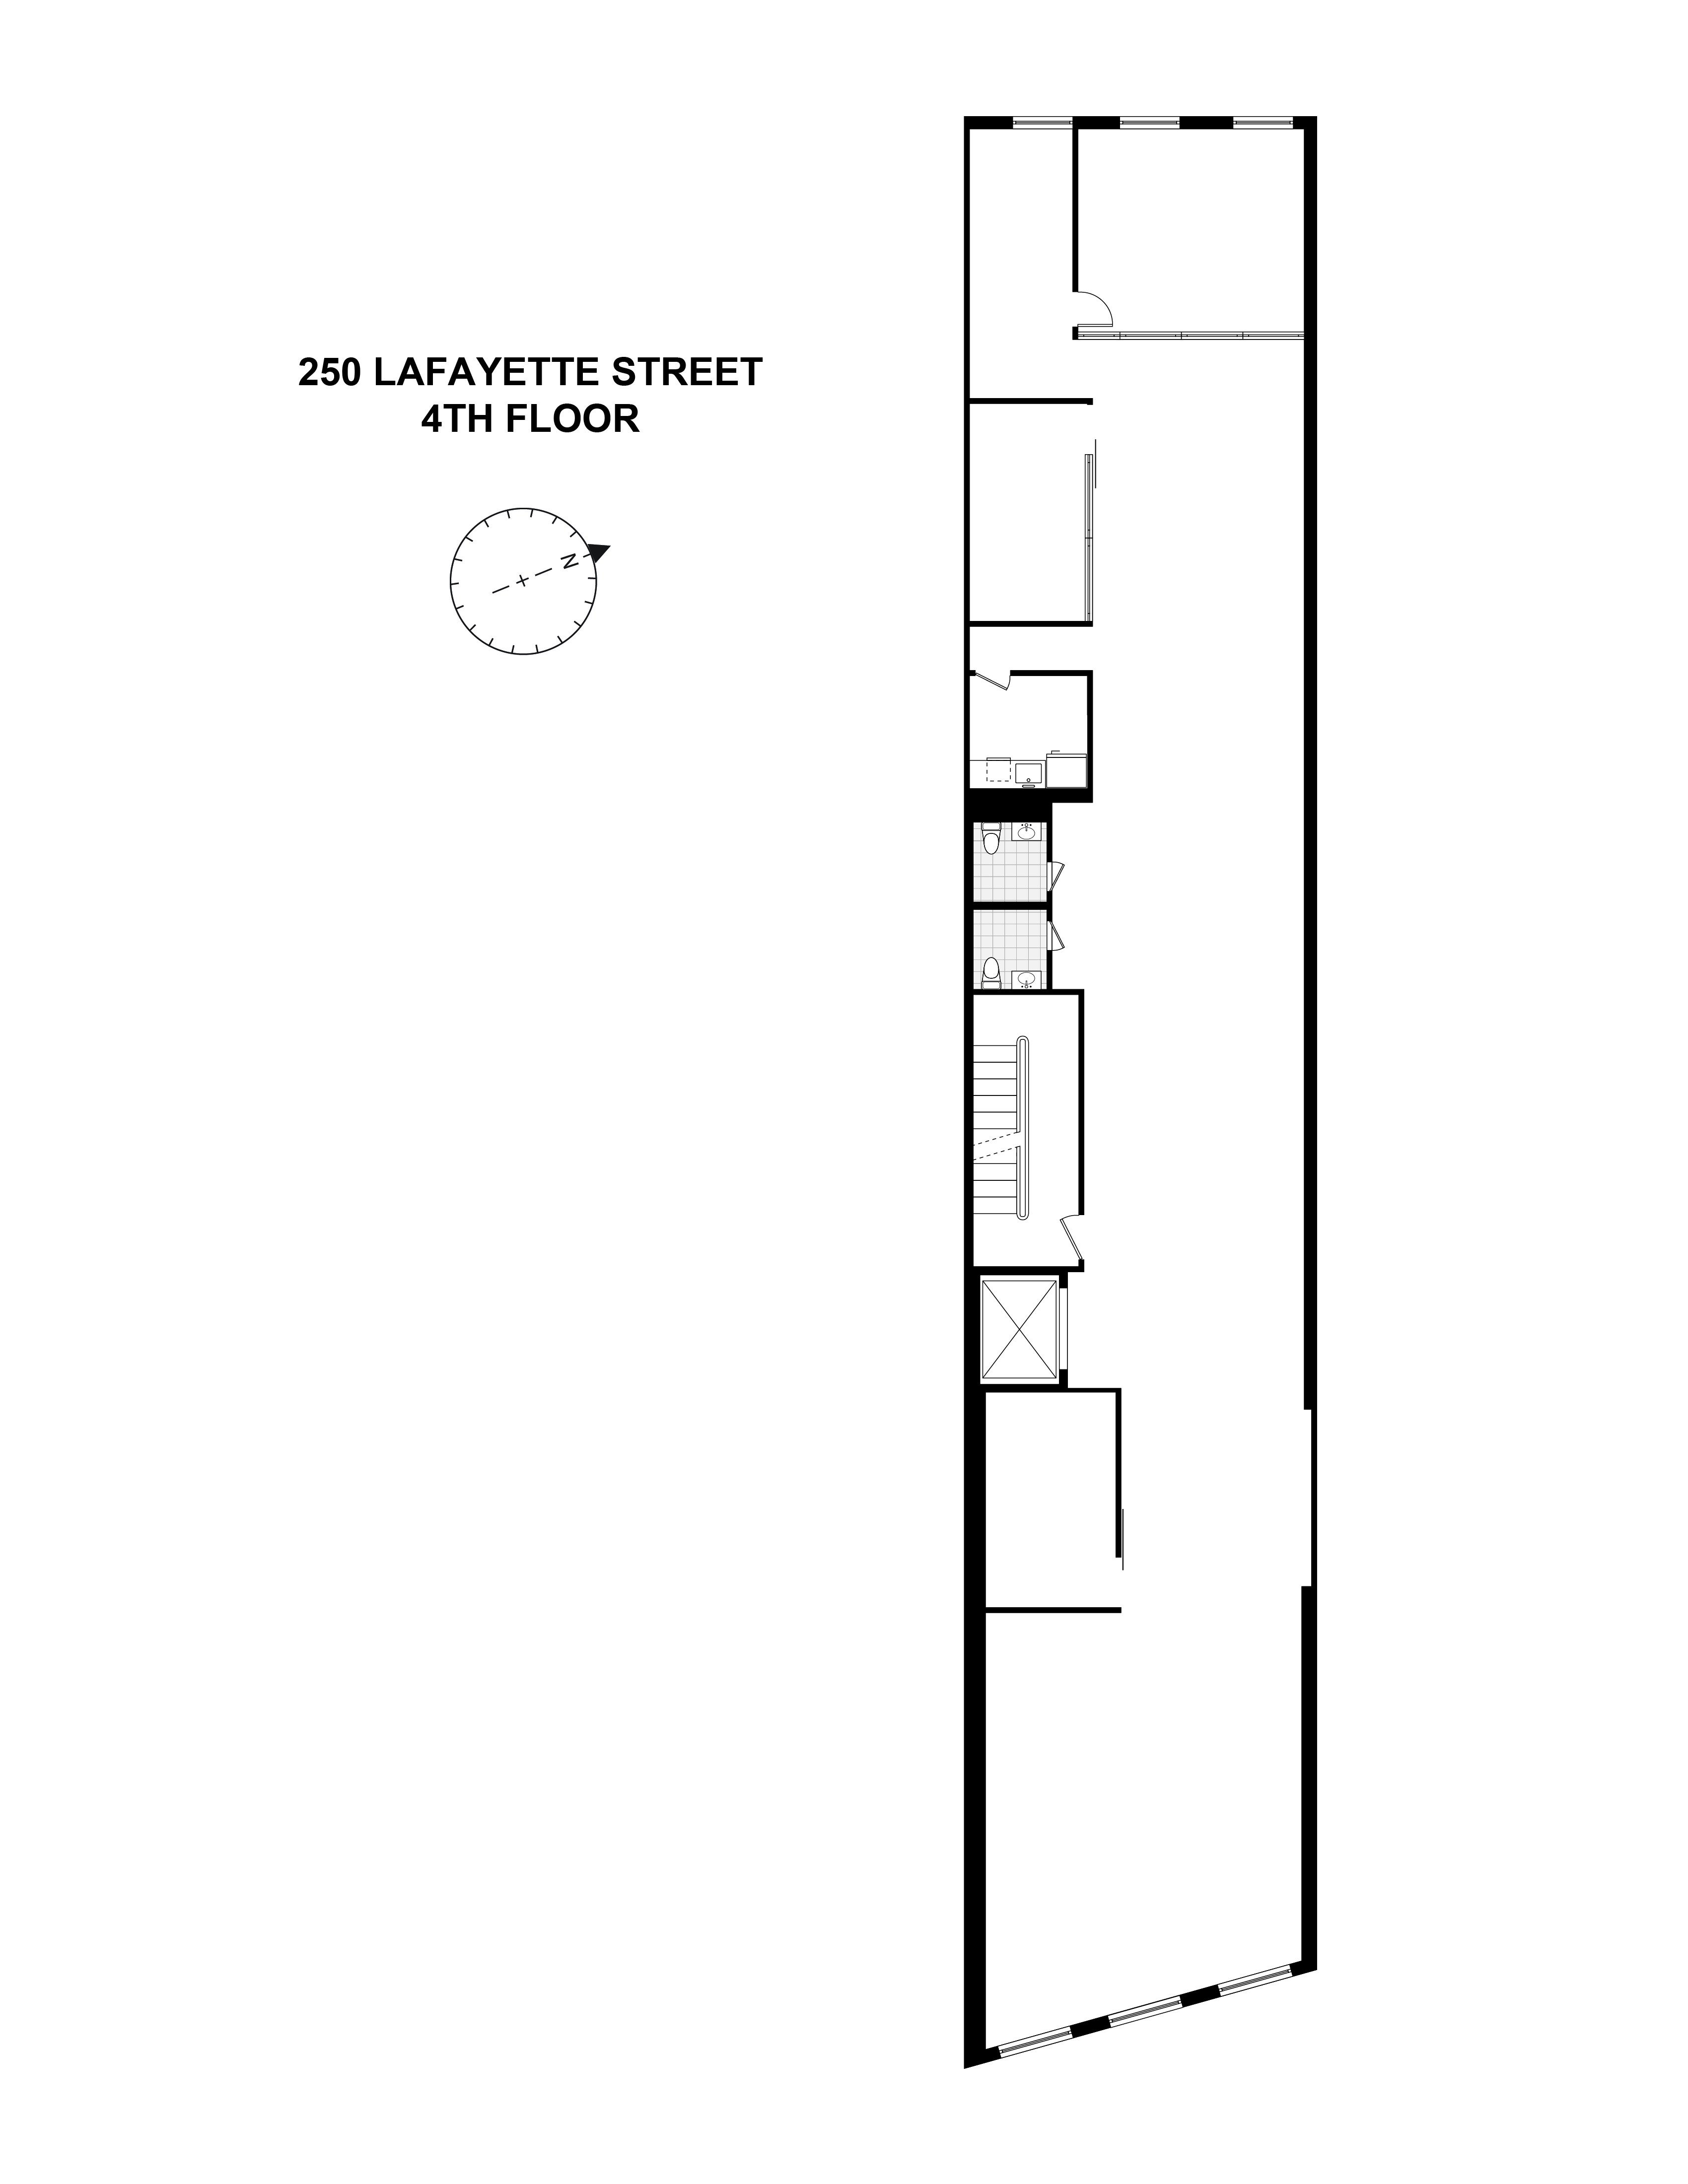 Floorplan for 250 Lafayette Street, 4